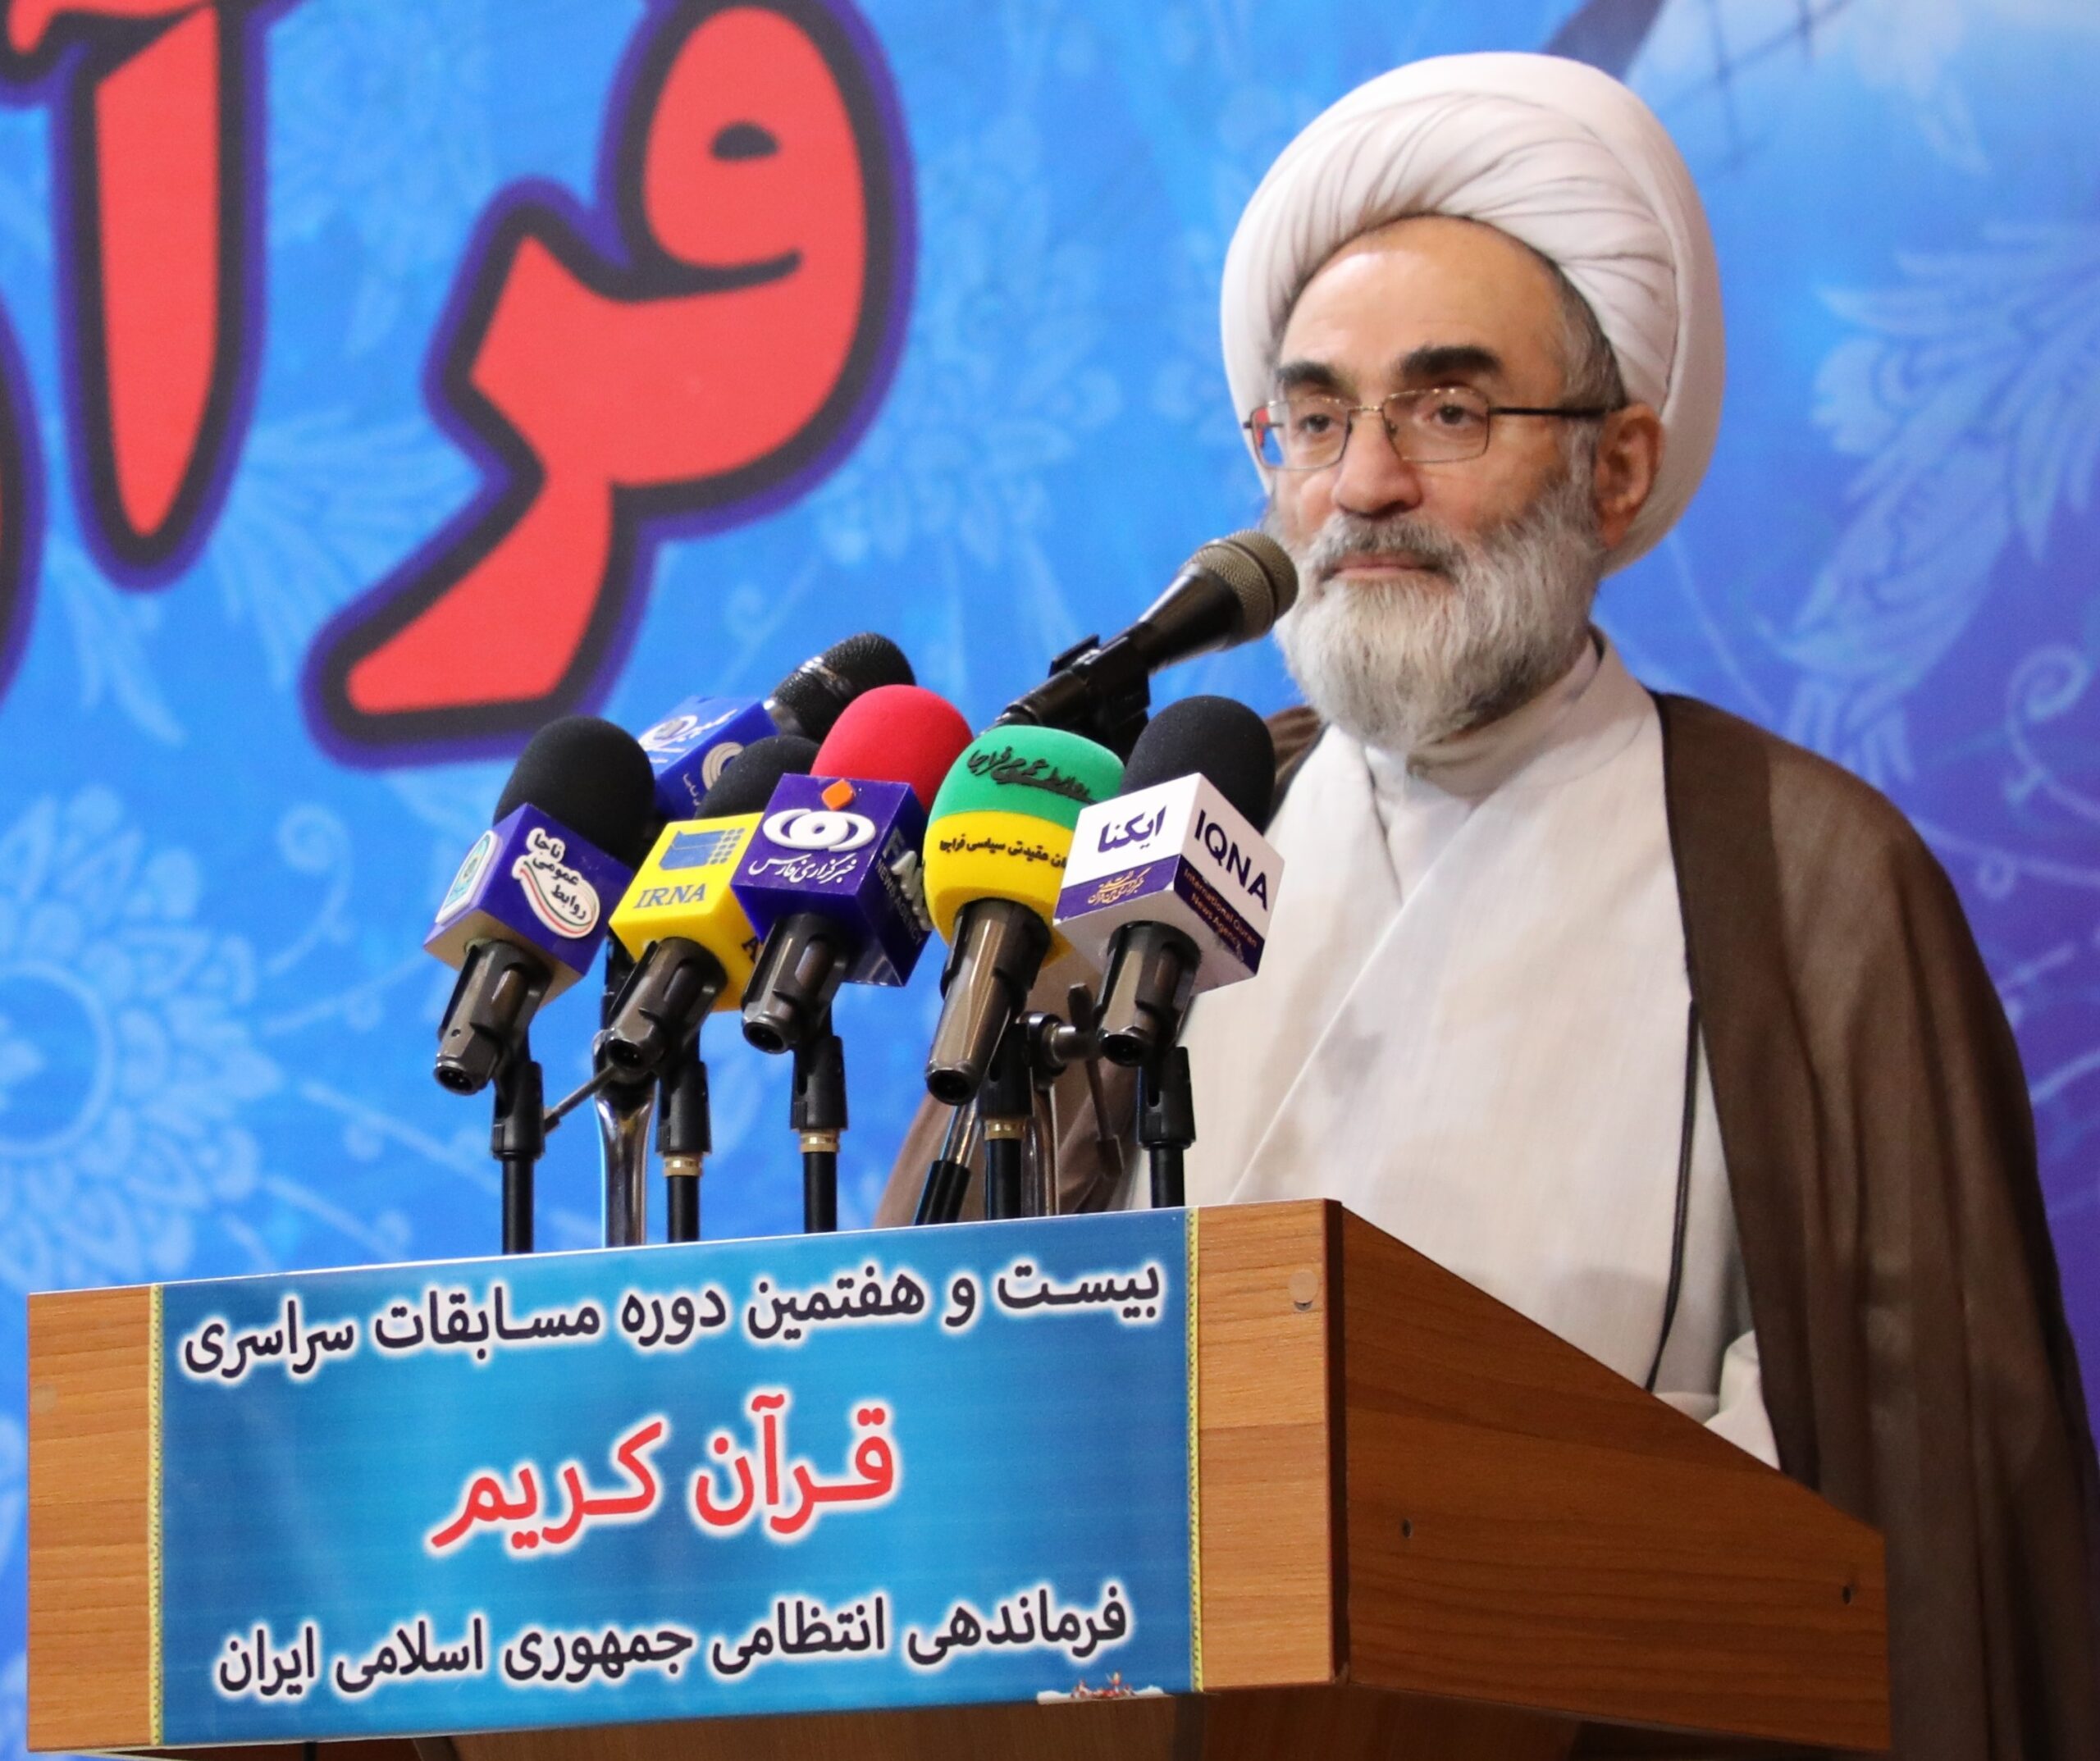 نگاه ارزشی و دینی ملت ایران برای استکبار جهانی خطرساز است